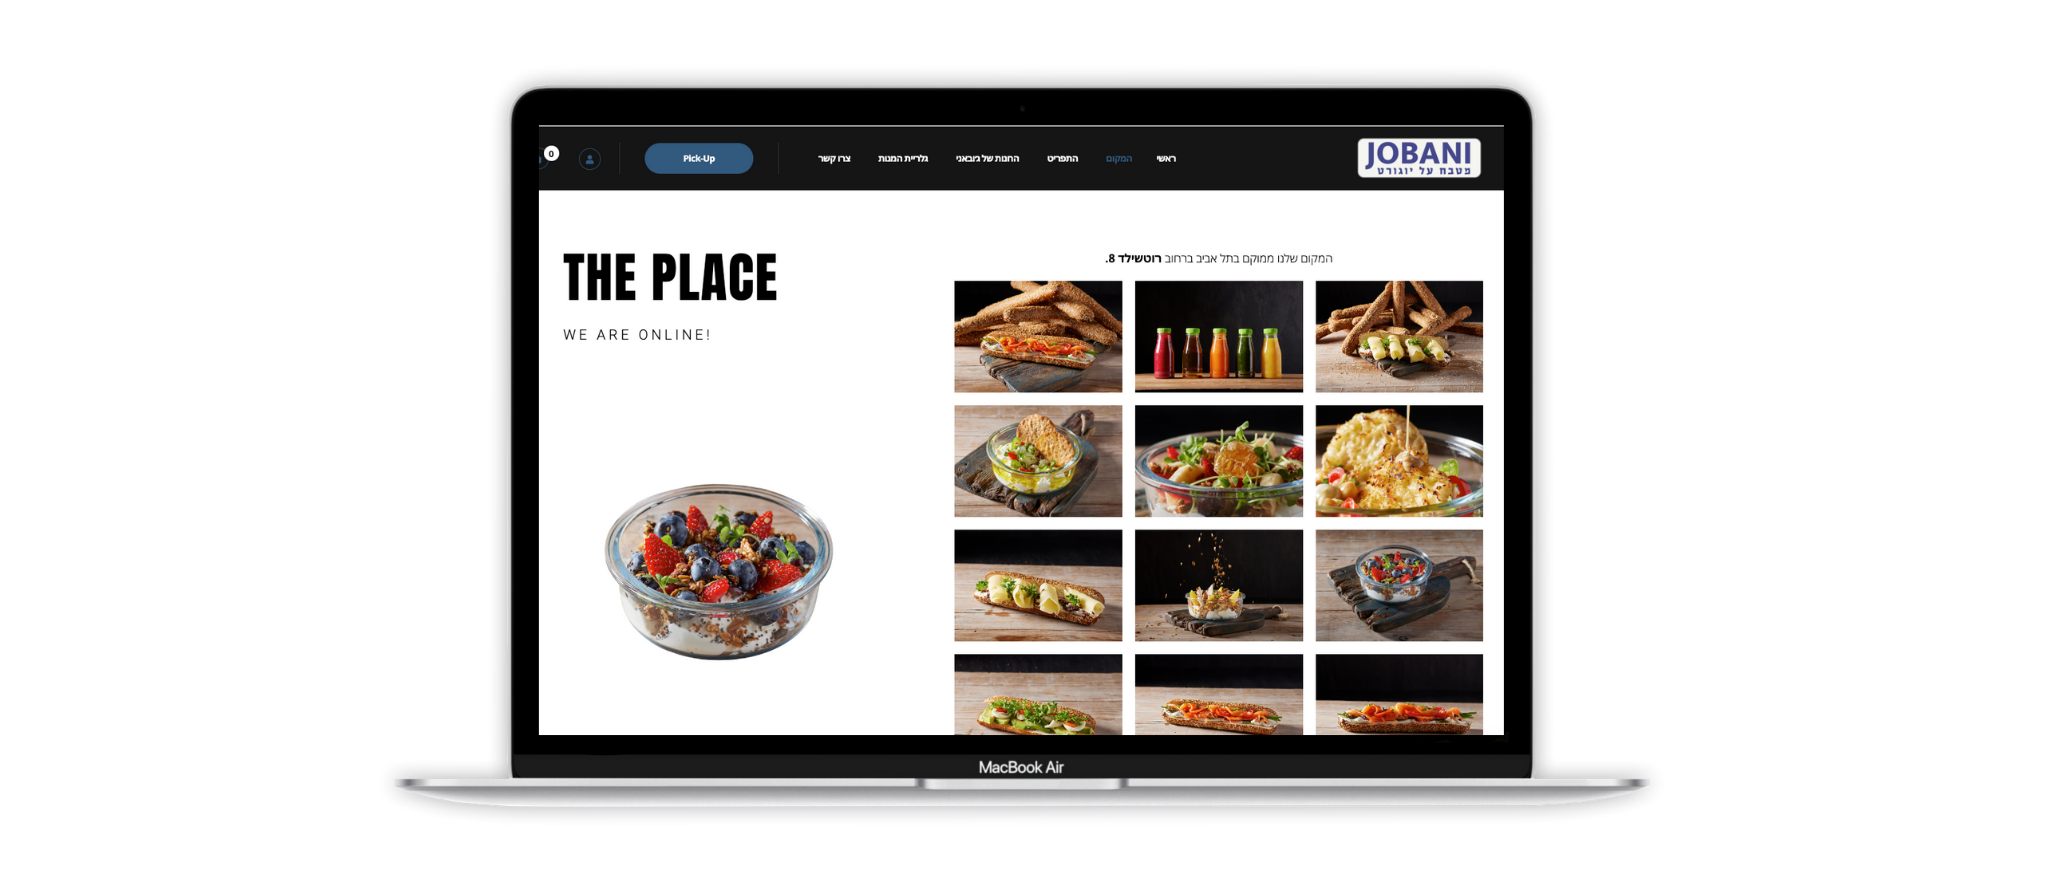 ג׳ובאני אתר פיקאפים לבית קפה בתל אביב עם חיבור לקופה בענן ומוועדון לקוחות ומערכת ניהול B2B עם קופה בענן